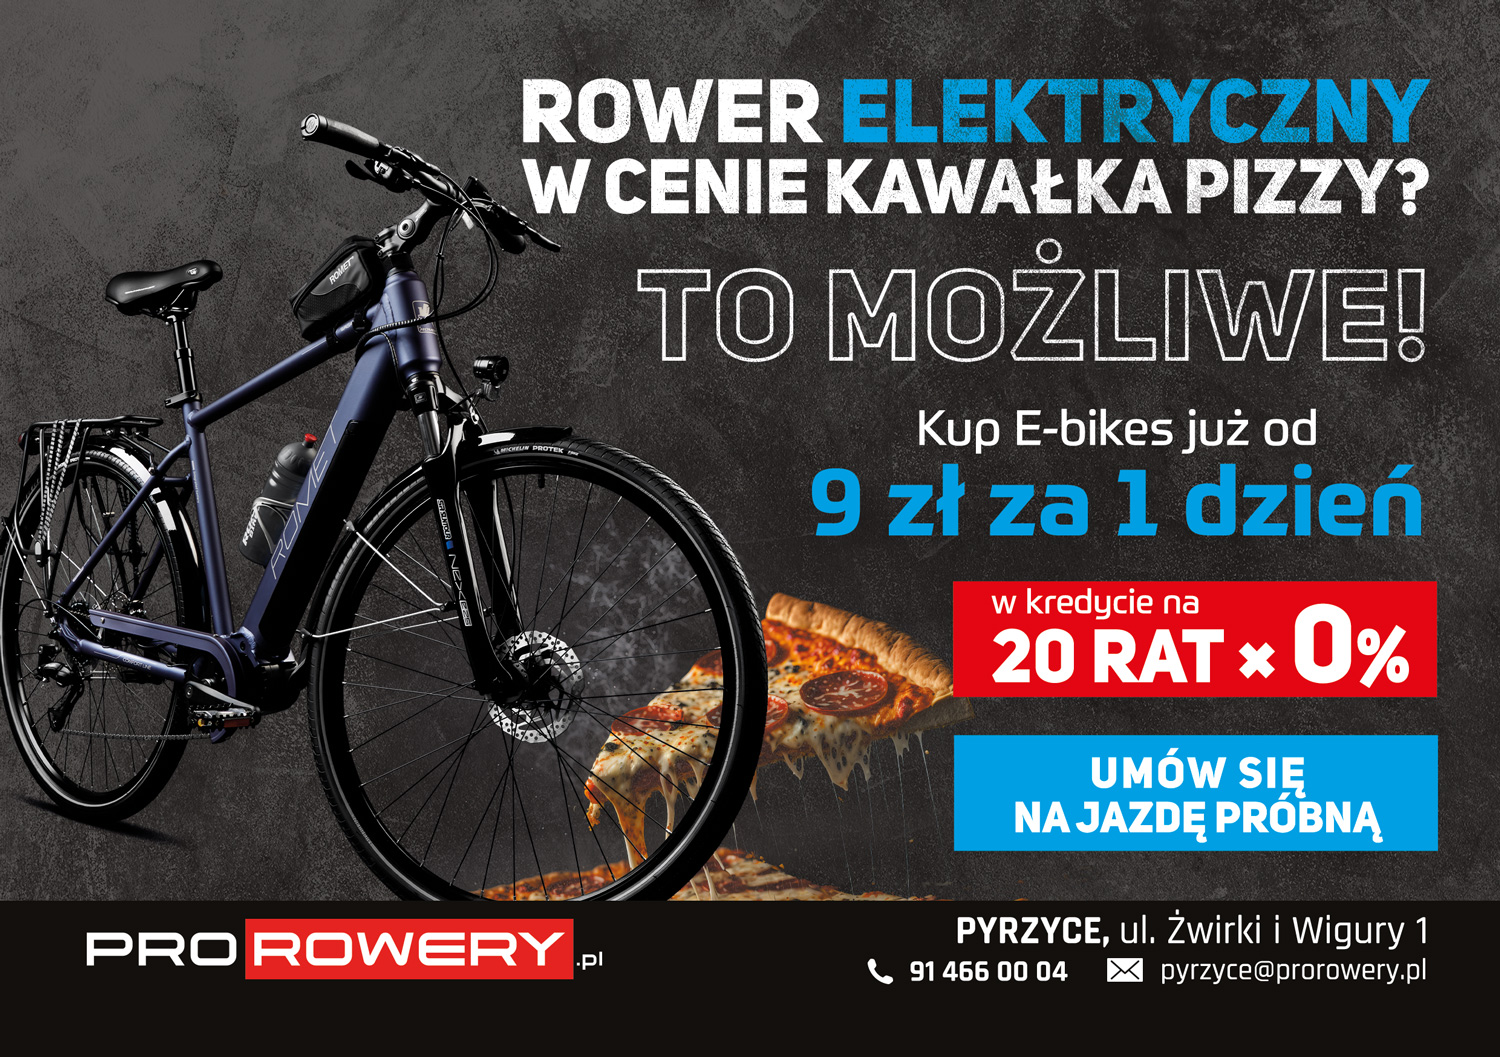 You are currently viewing Szaleństwo! Rower elektryczny w cenie kawałka pizzy, i jeszcze gwarantują Ci najniższa cenę na rowery! WOW!